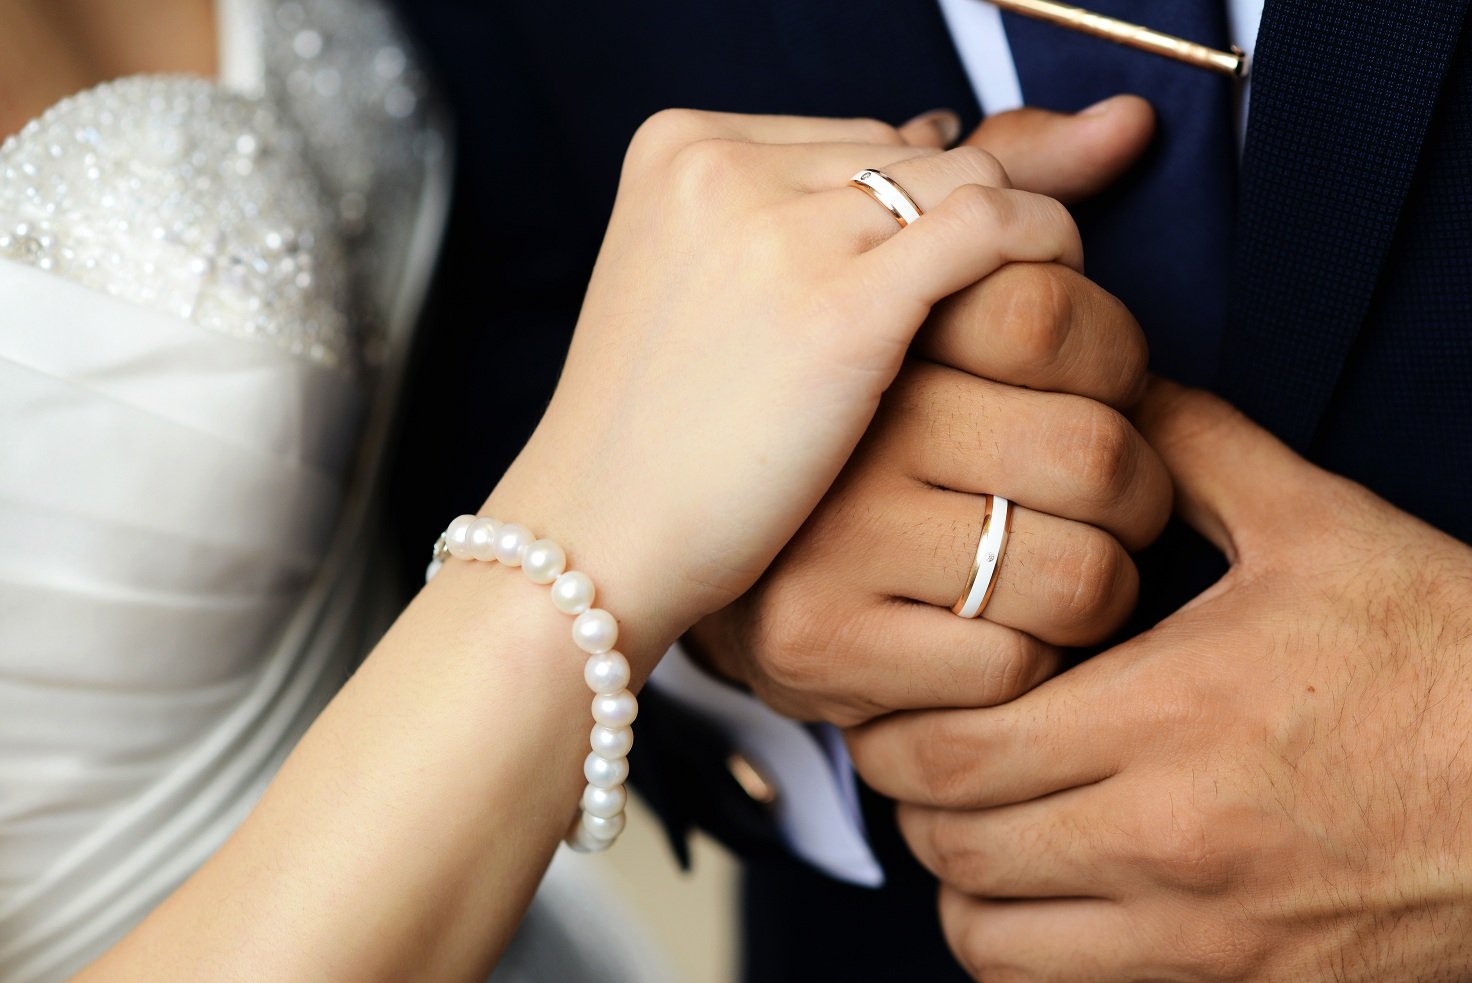 На какой руке и каком пальце носят обручальное кольцо мужчины и женщины православные, мусульмане, католики, женатые, разведенные, вдовы, вдовцы?